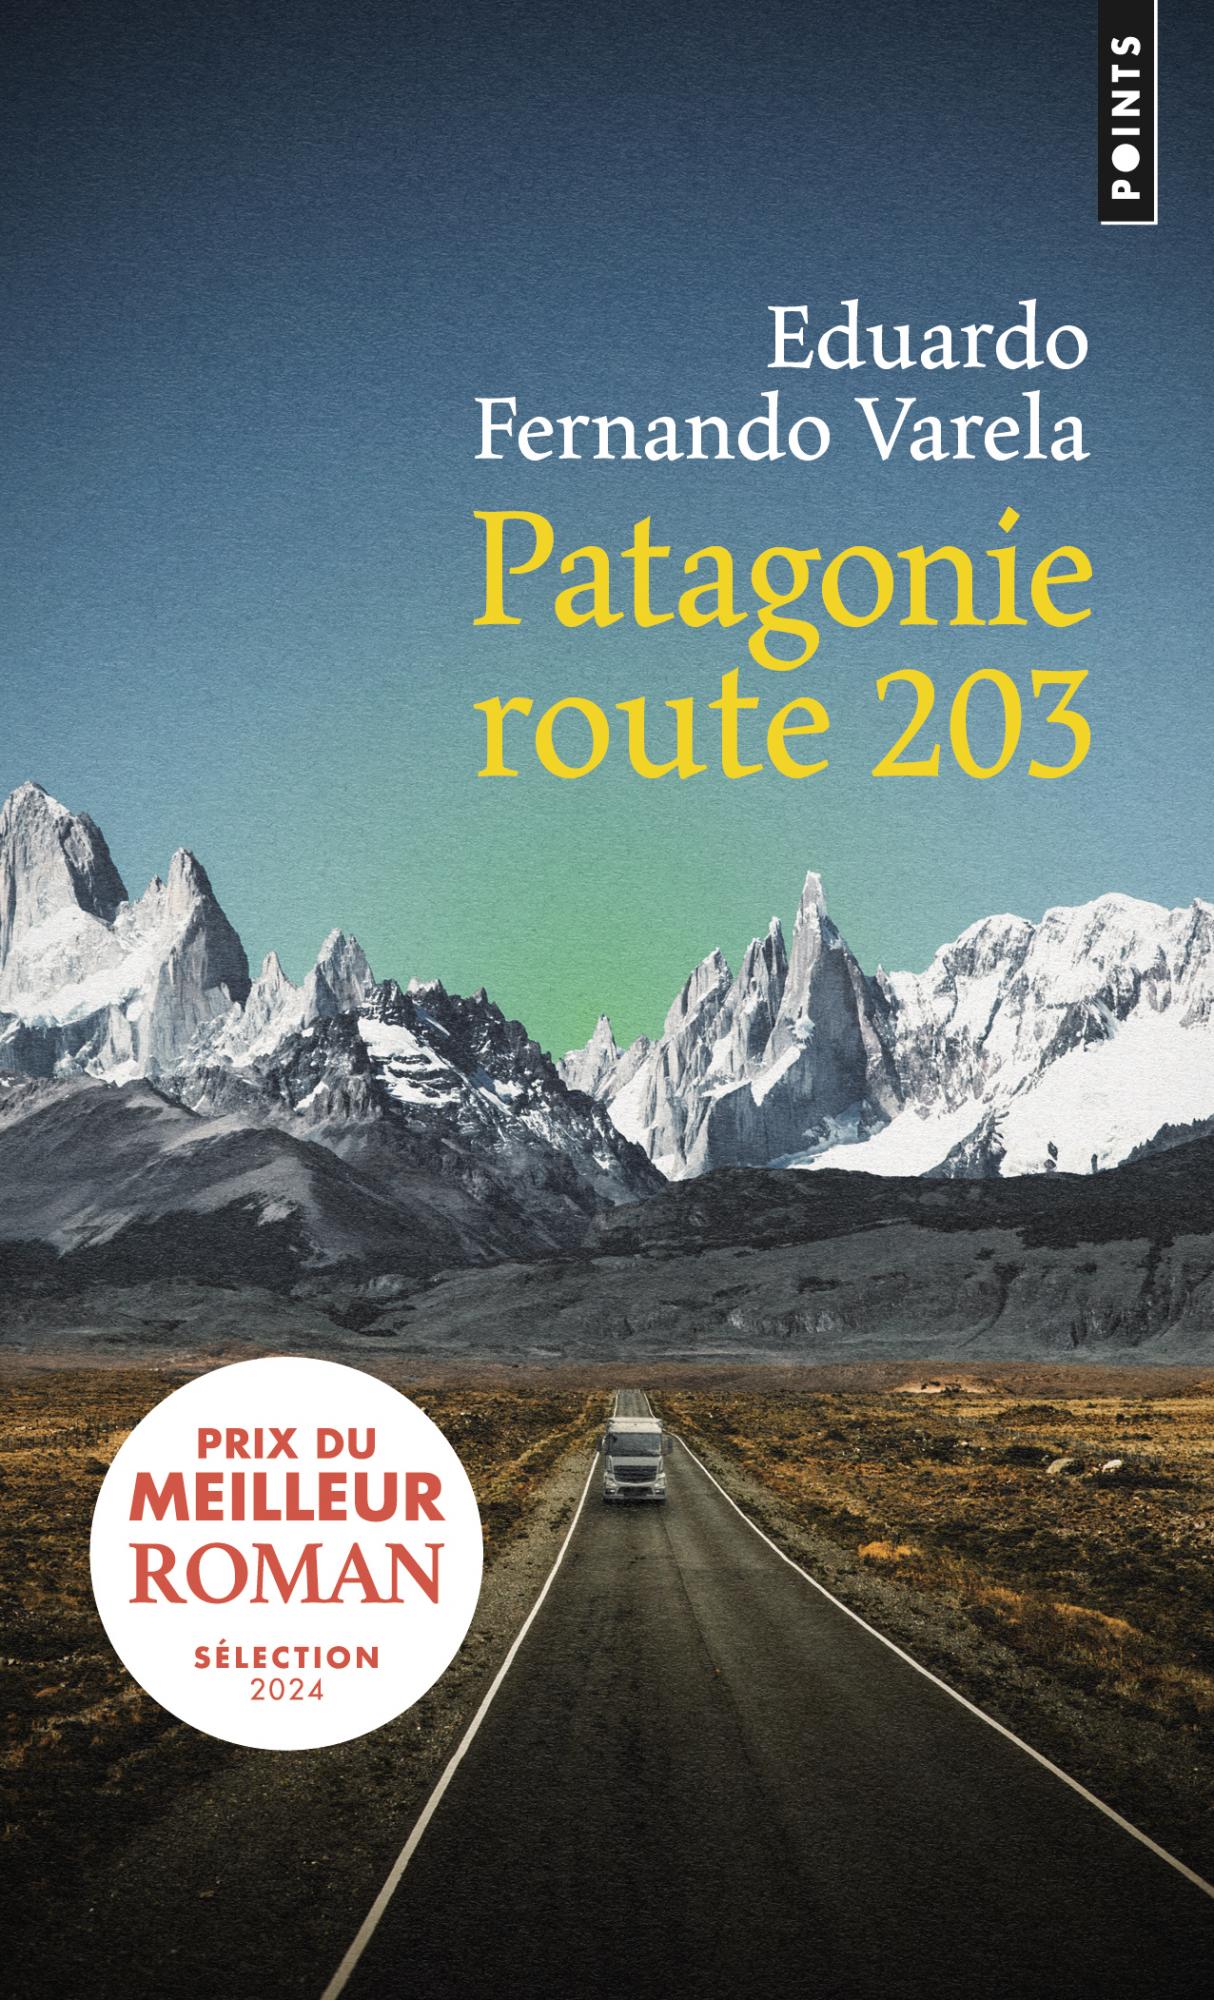 Patagonie route 203 - Eduardo Fernando Varela